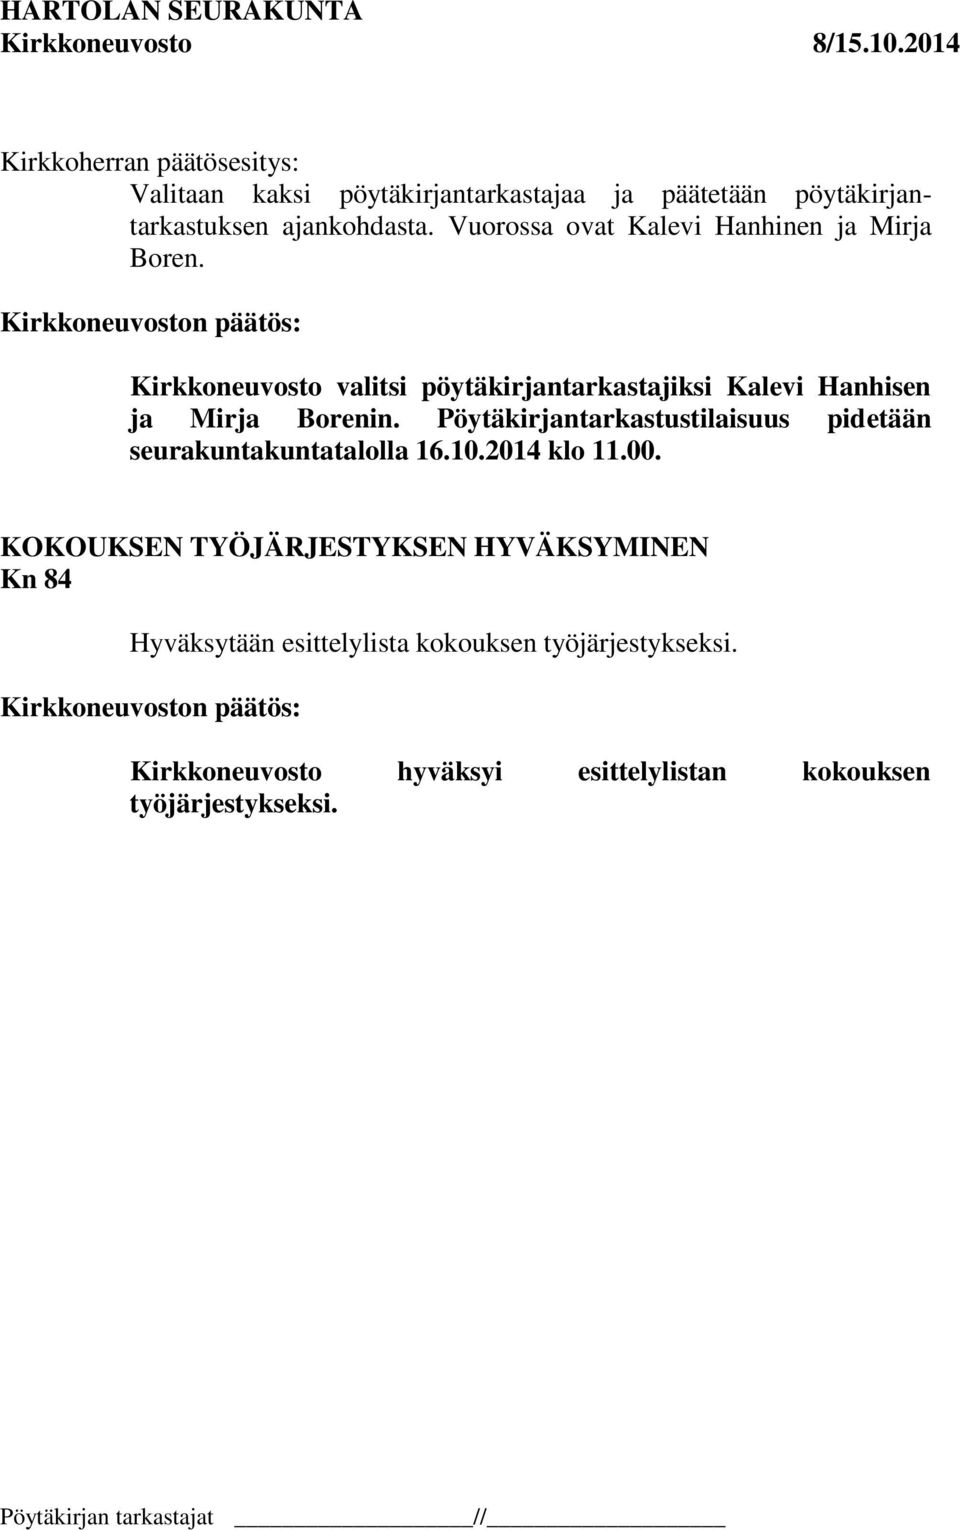 Kirkkoneuvosto valitsi pöytäkirjantarkastajiksi Kalevi Hanhisen ja Mirja Borenin.